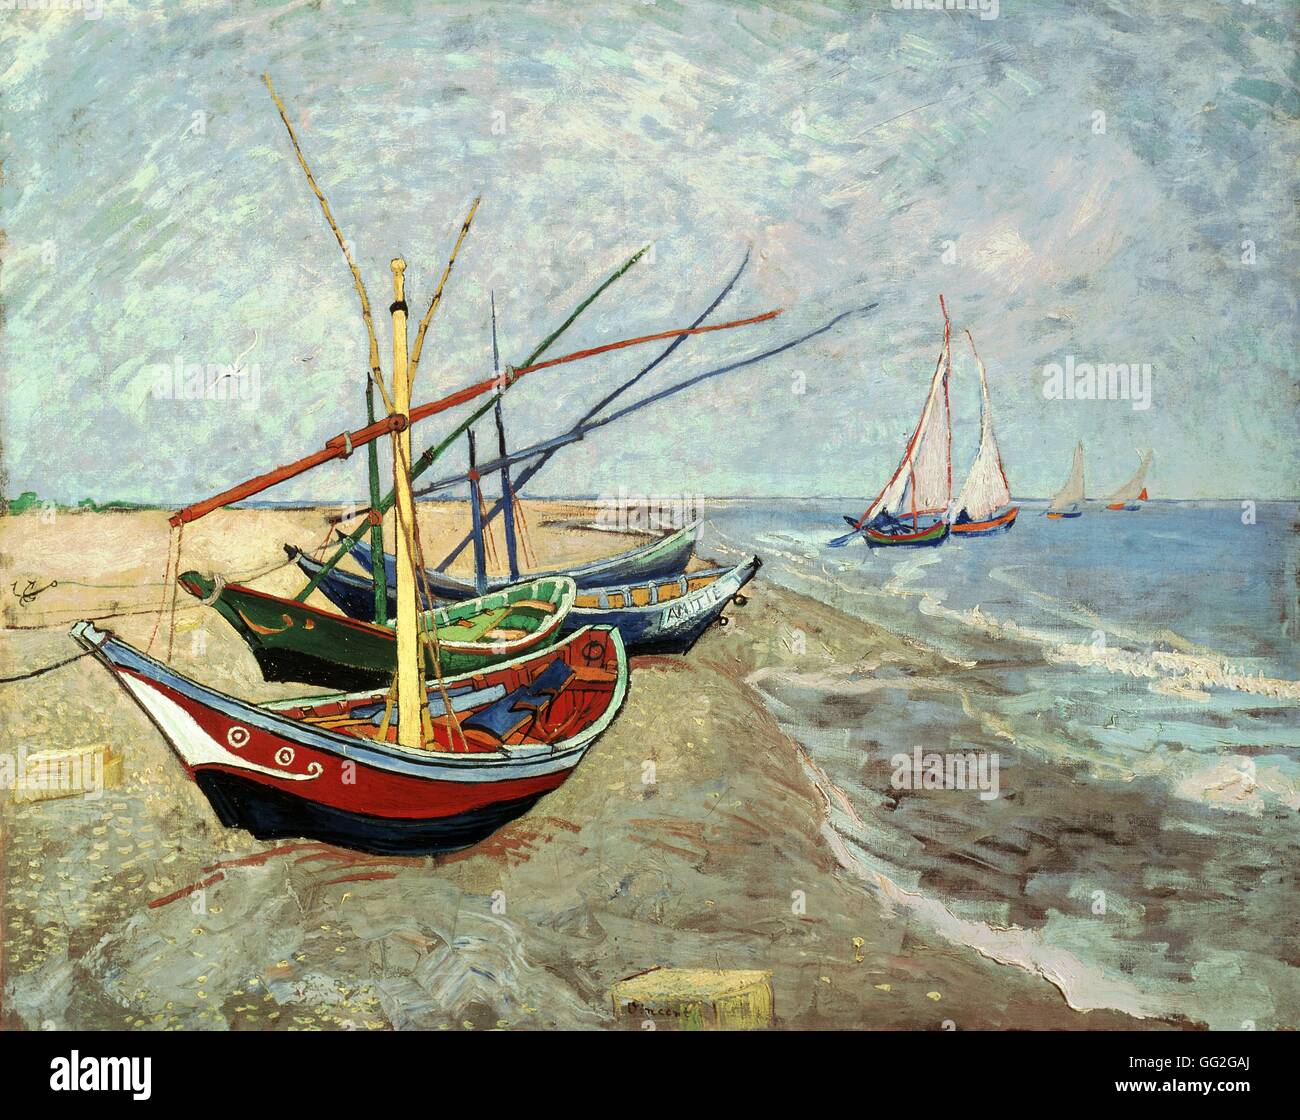 Vincent van Gogh l'école Néerlandaise Bateaux de pêche sur la plage à Les Saintes-Maries-de-la-Mer Juin 1888 Huile sur toile (65 x 81,5 cm) Amsterdam, Van Gogh museum Banque D'Images